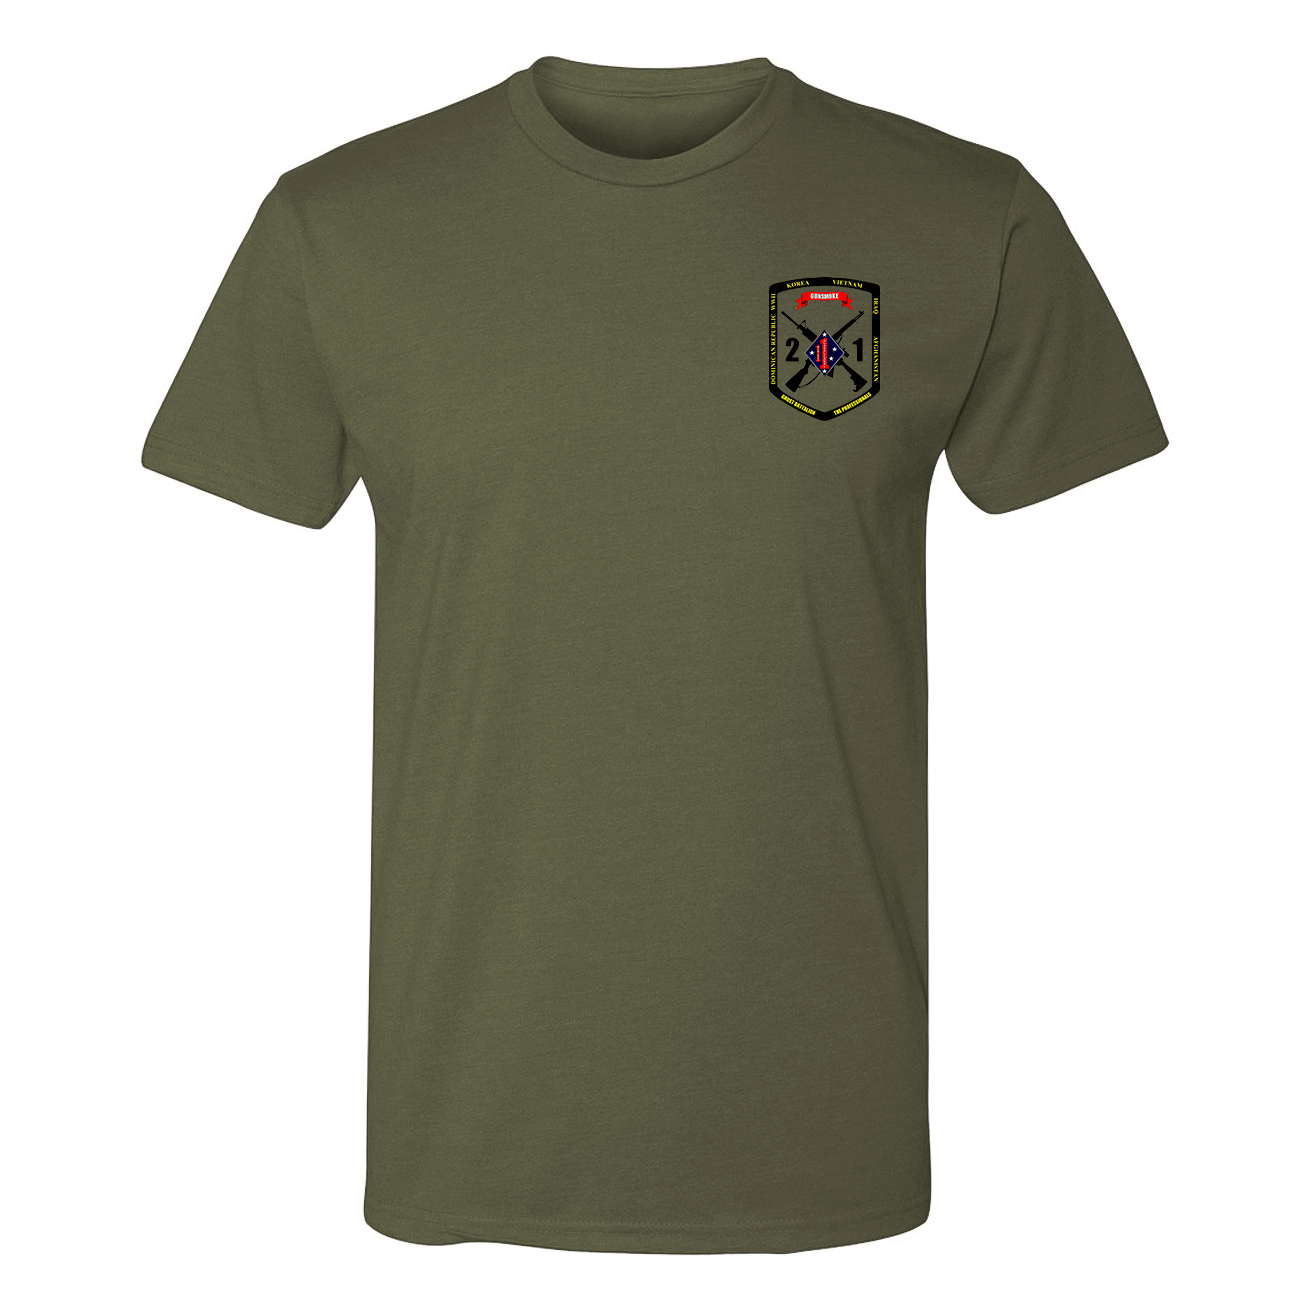 2nd Battalion 1st Marines Unit Shirt Gunsmoke